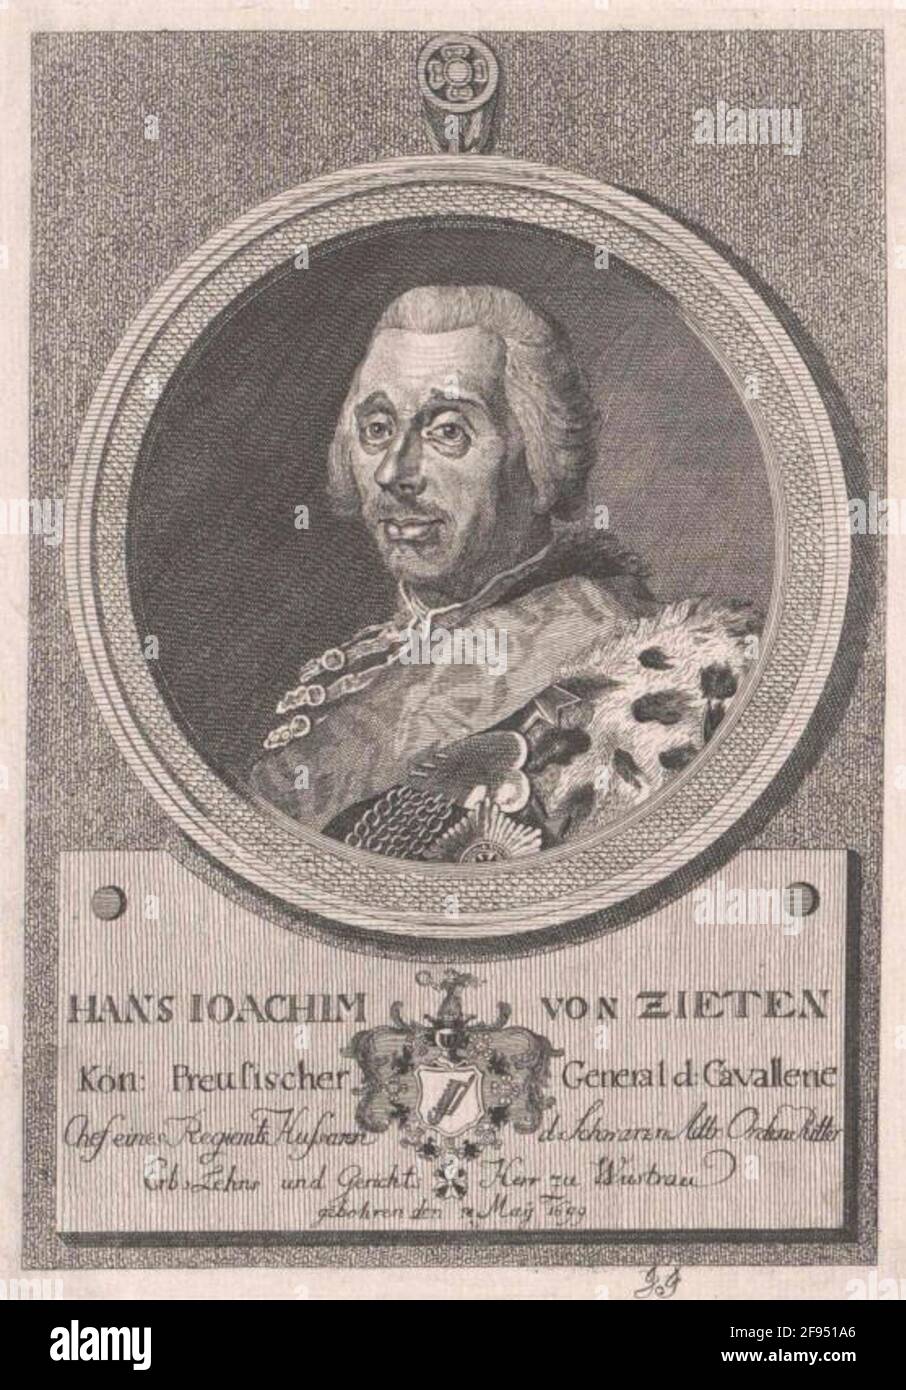 Zed, Hans Joachim of Eraser: Monogramist J.G.Dation: 1770/1786 Stock Photo